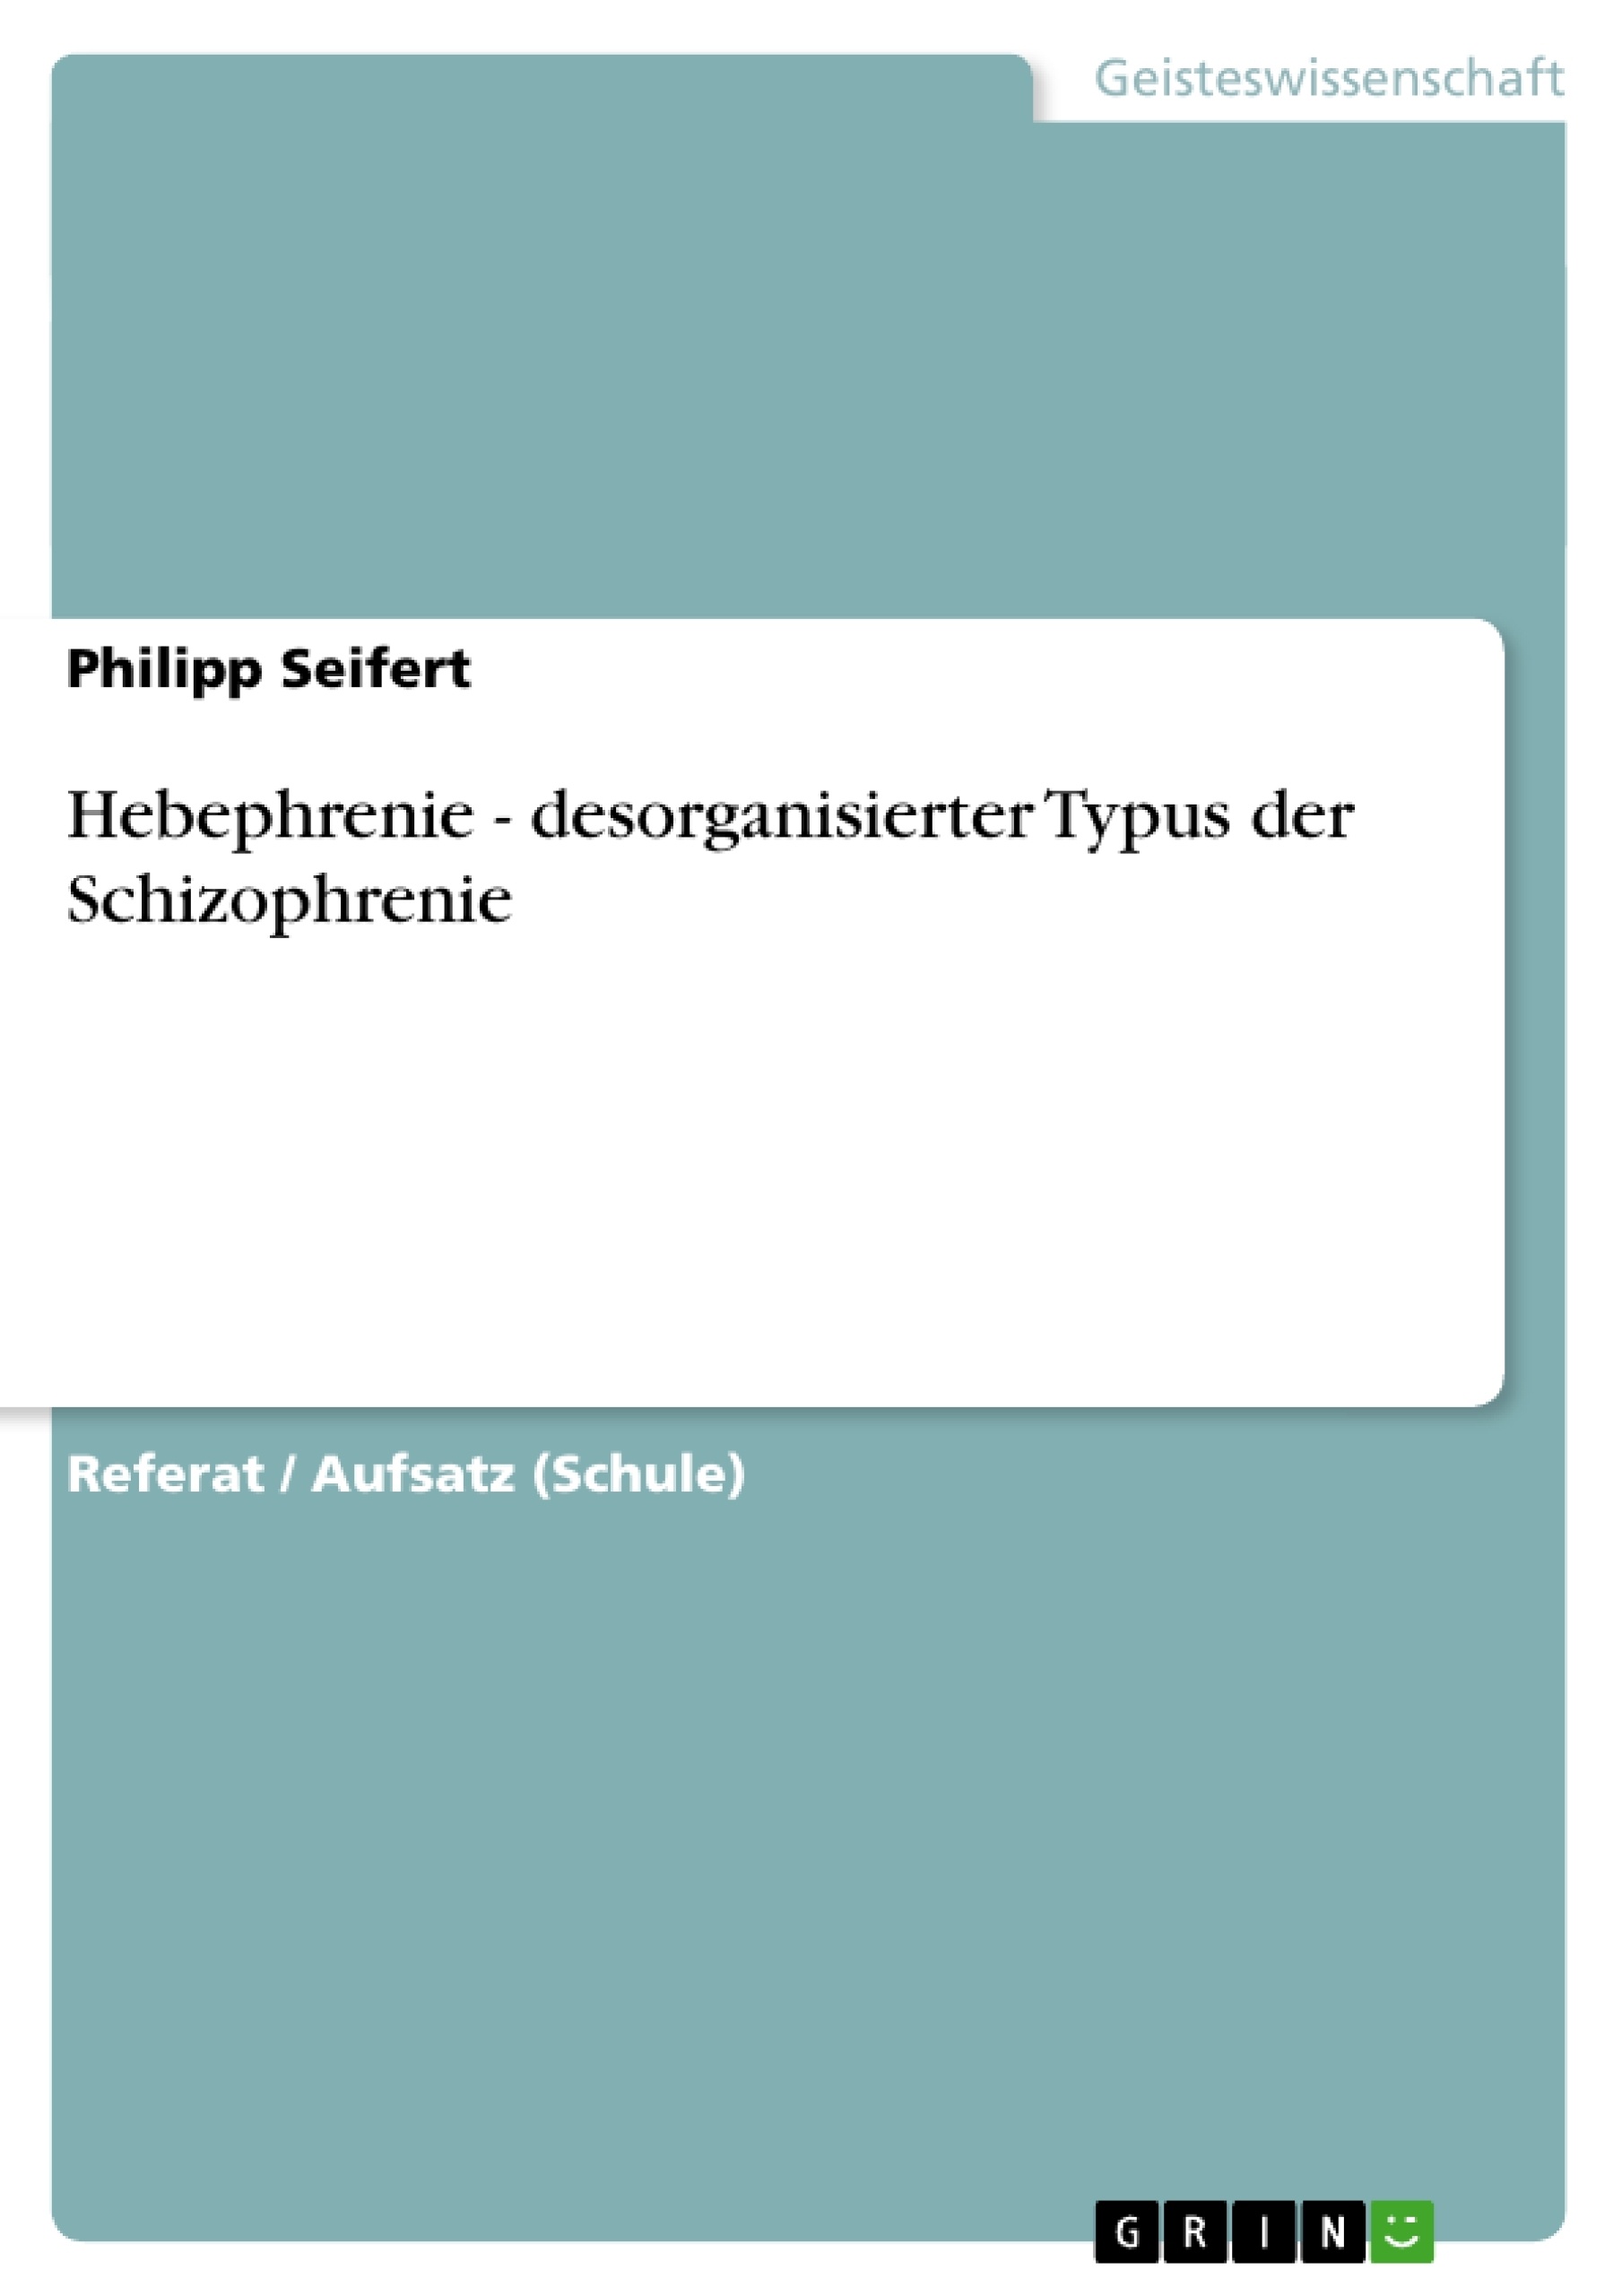 Título: Hebephrenie - desorganisierter Typus der Schizophrenie